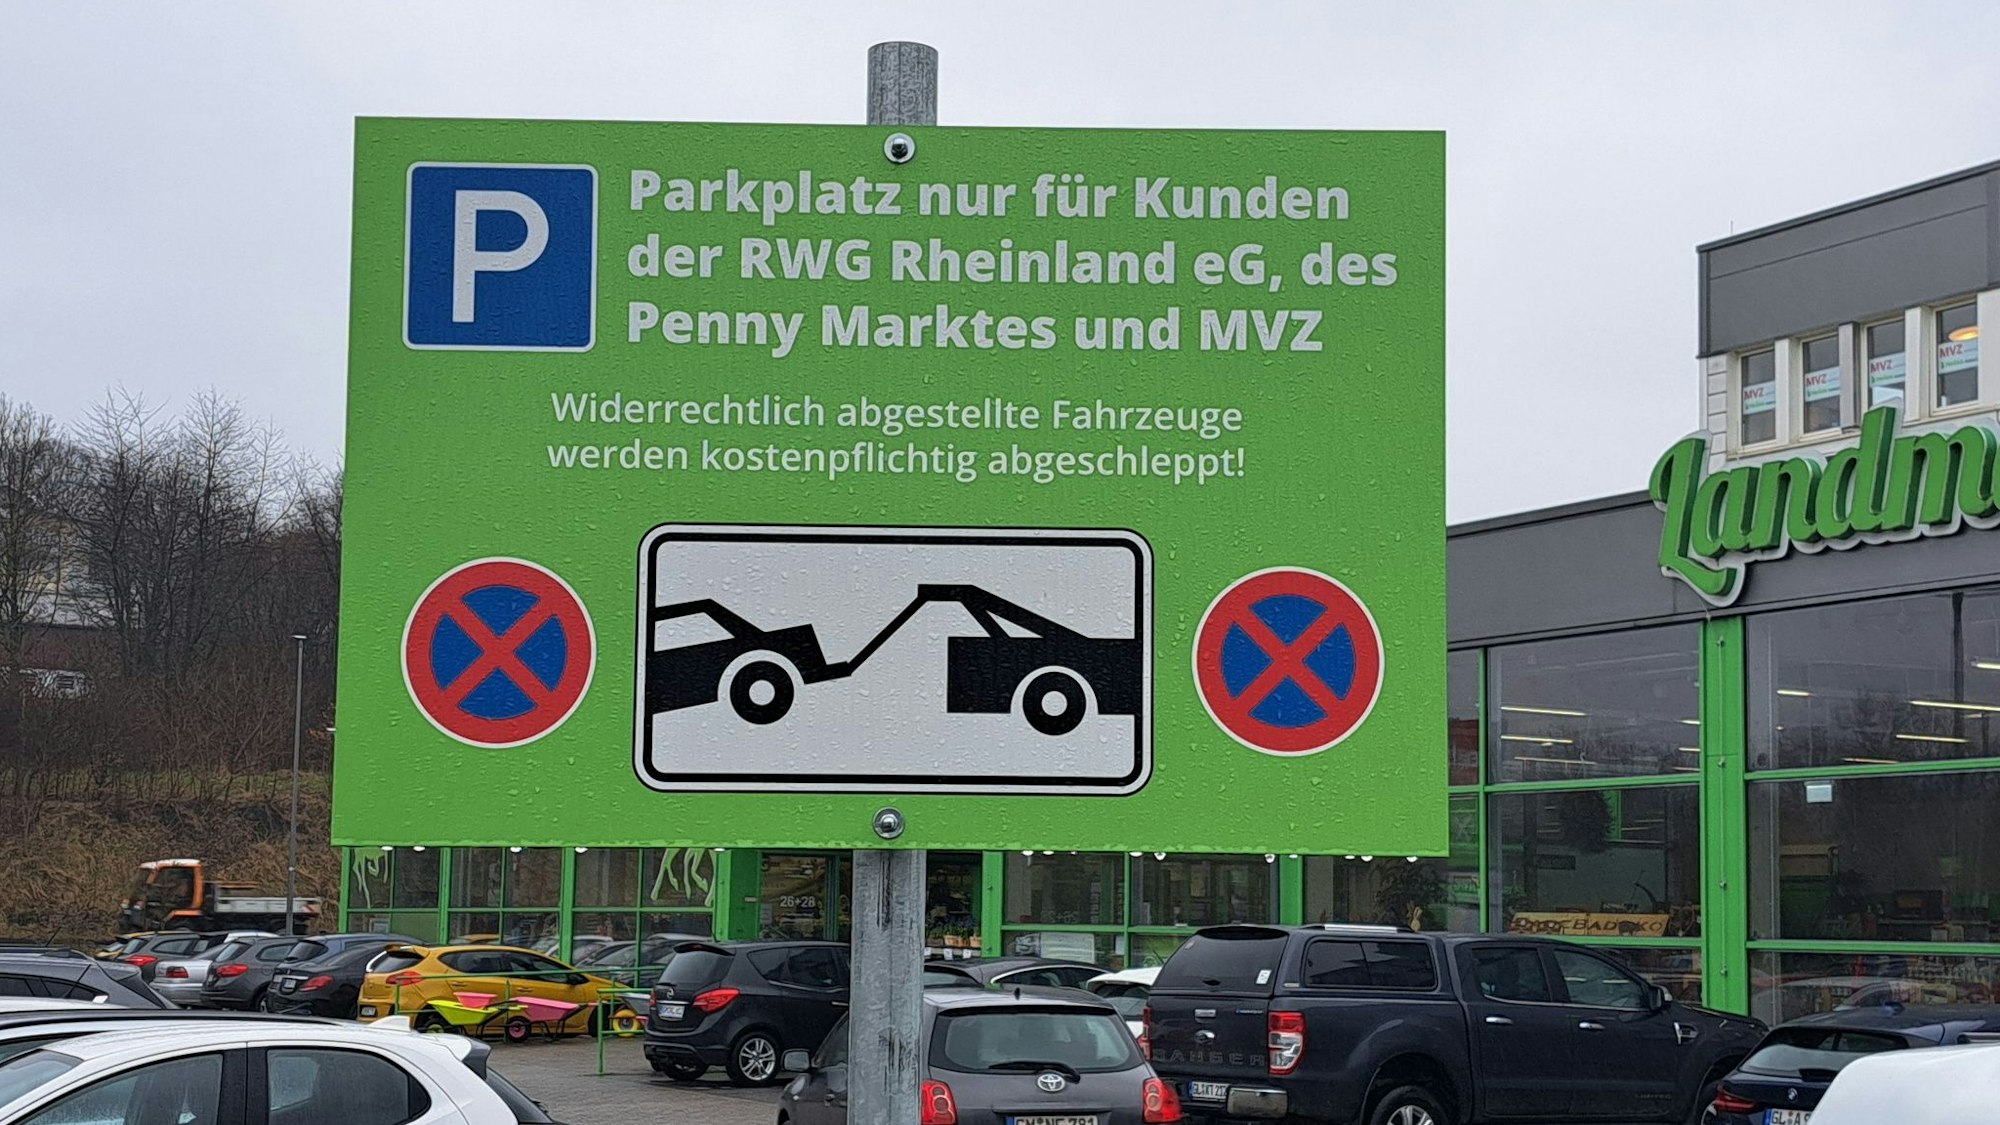 Das Foto zeigt den Parkplatz zwischen Raiffeisen- und Penny-Markt und ein Schild mit der Aufschrift "Parkplatz nur für Kunden".